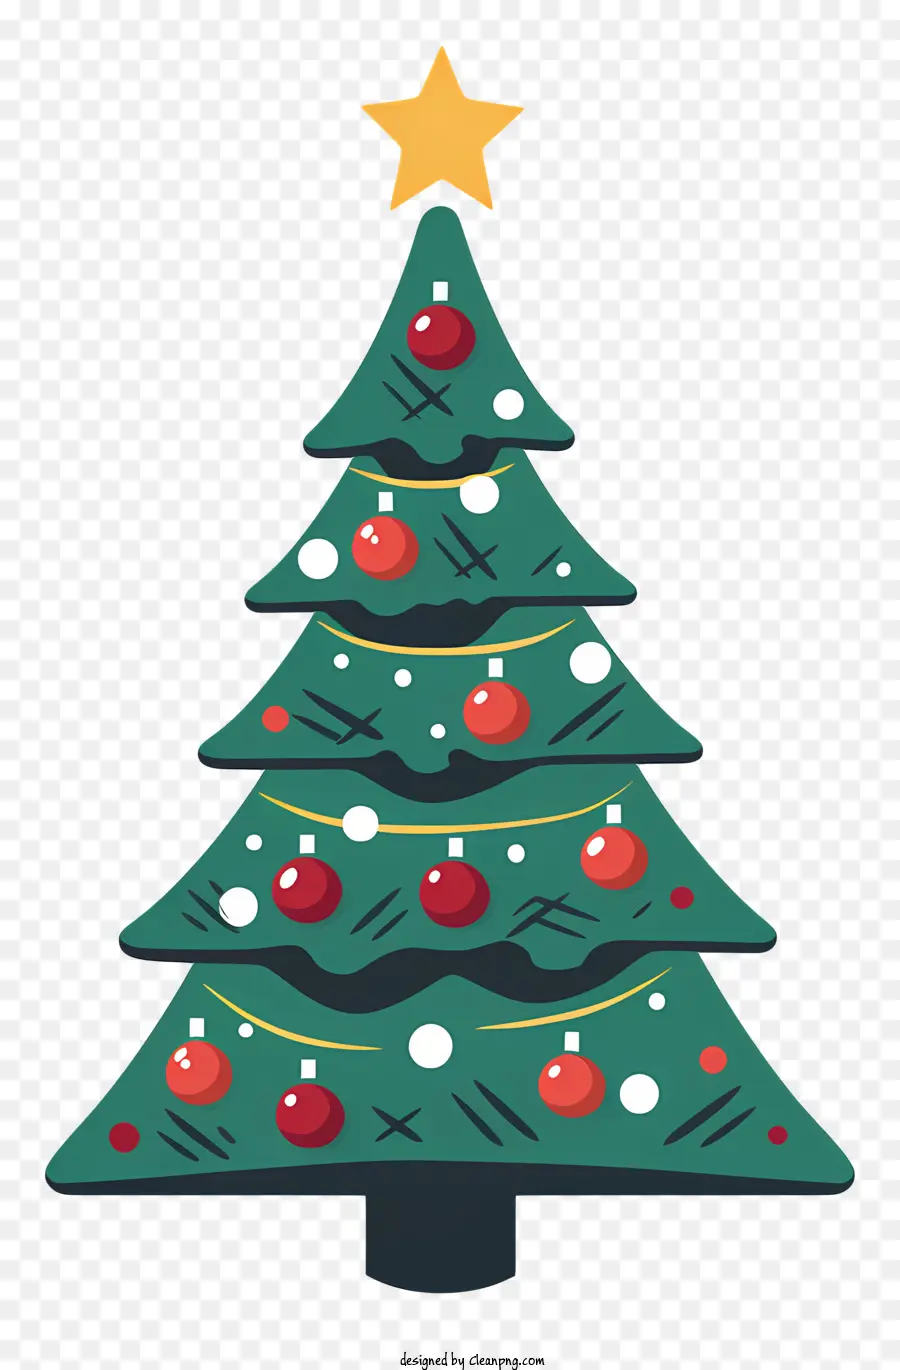 Weihnachtsbaum - Dekorierter Weihnachtsbaum mit goldenen Ornamenten und Stern